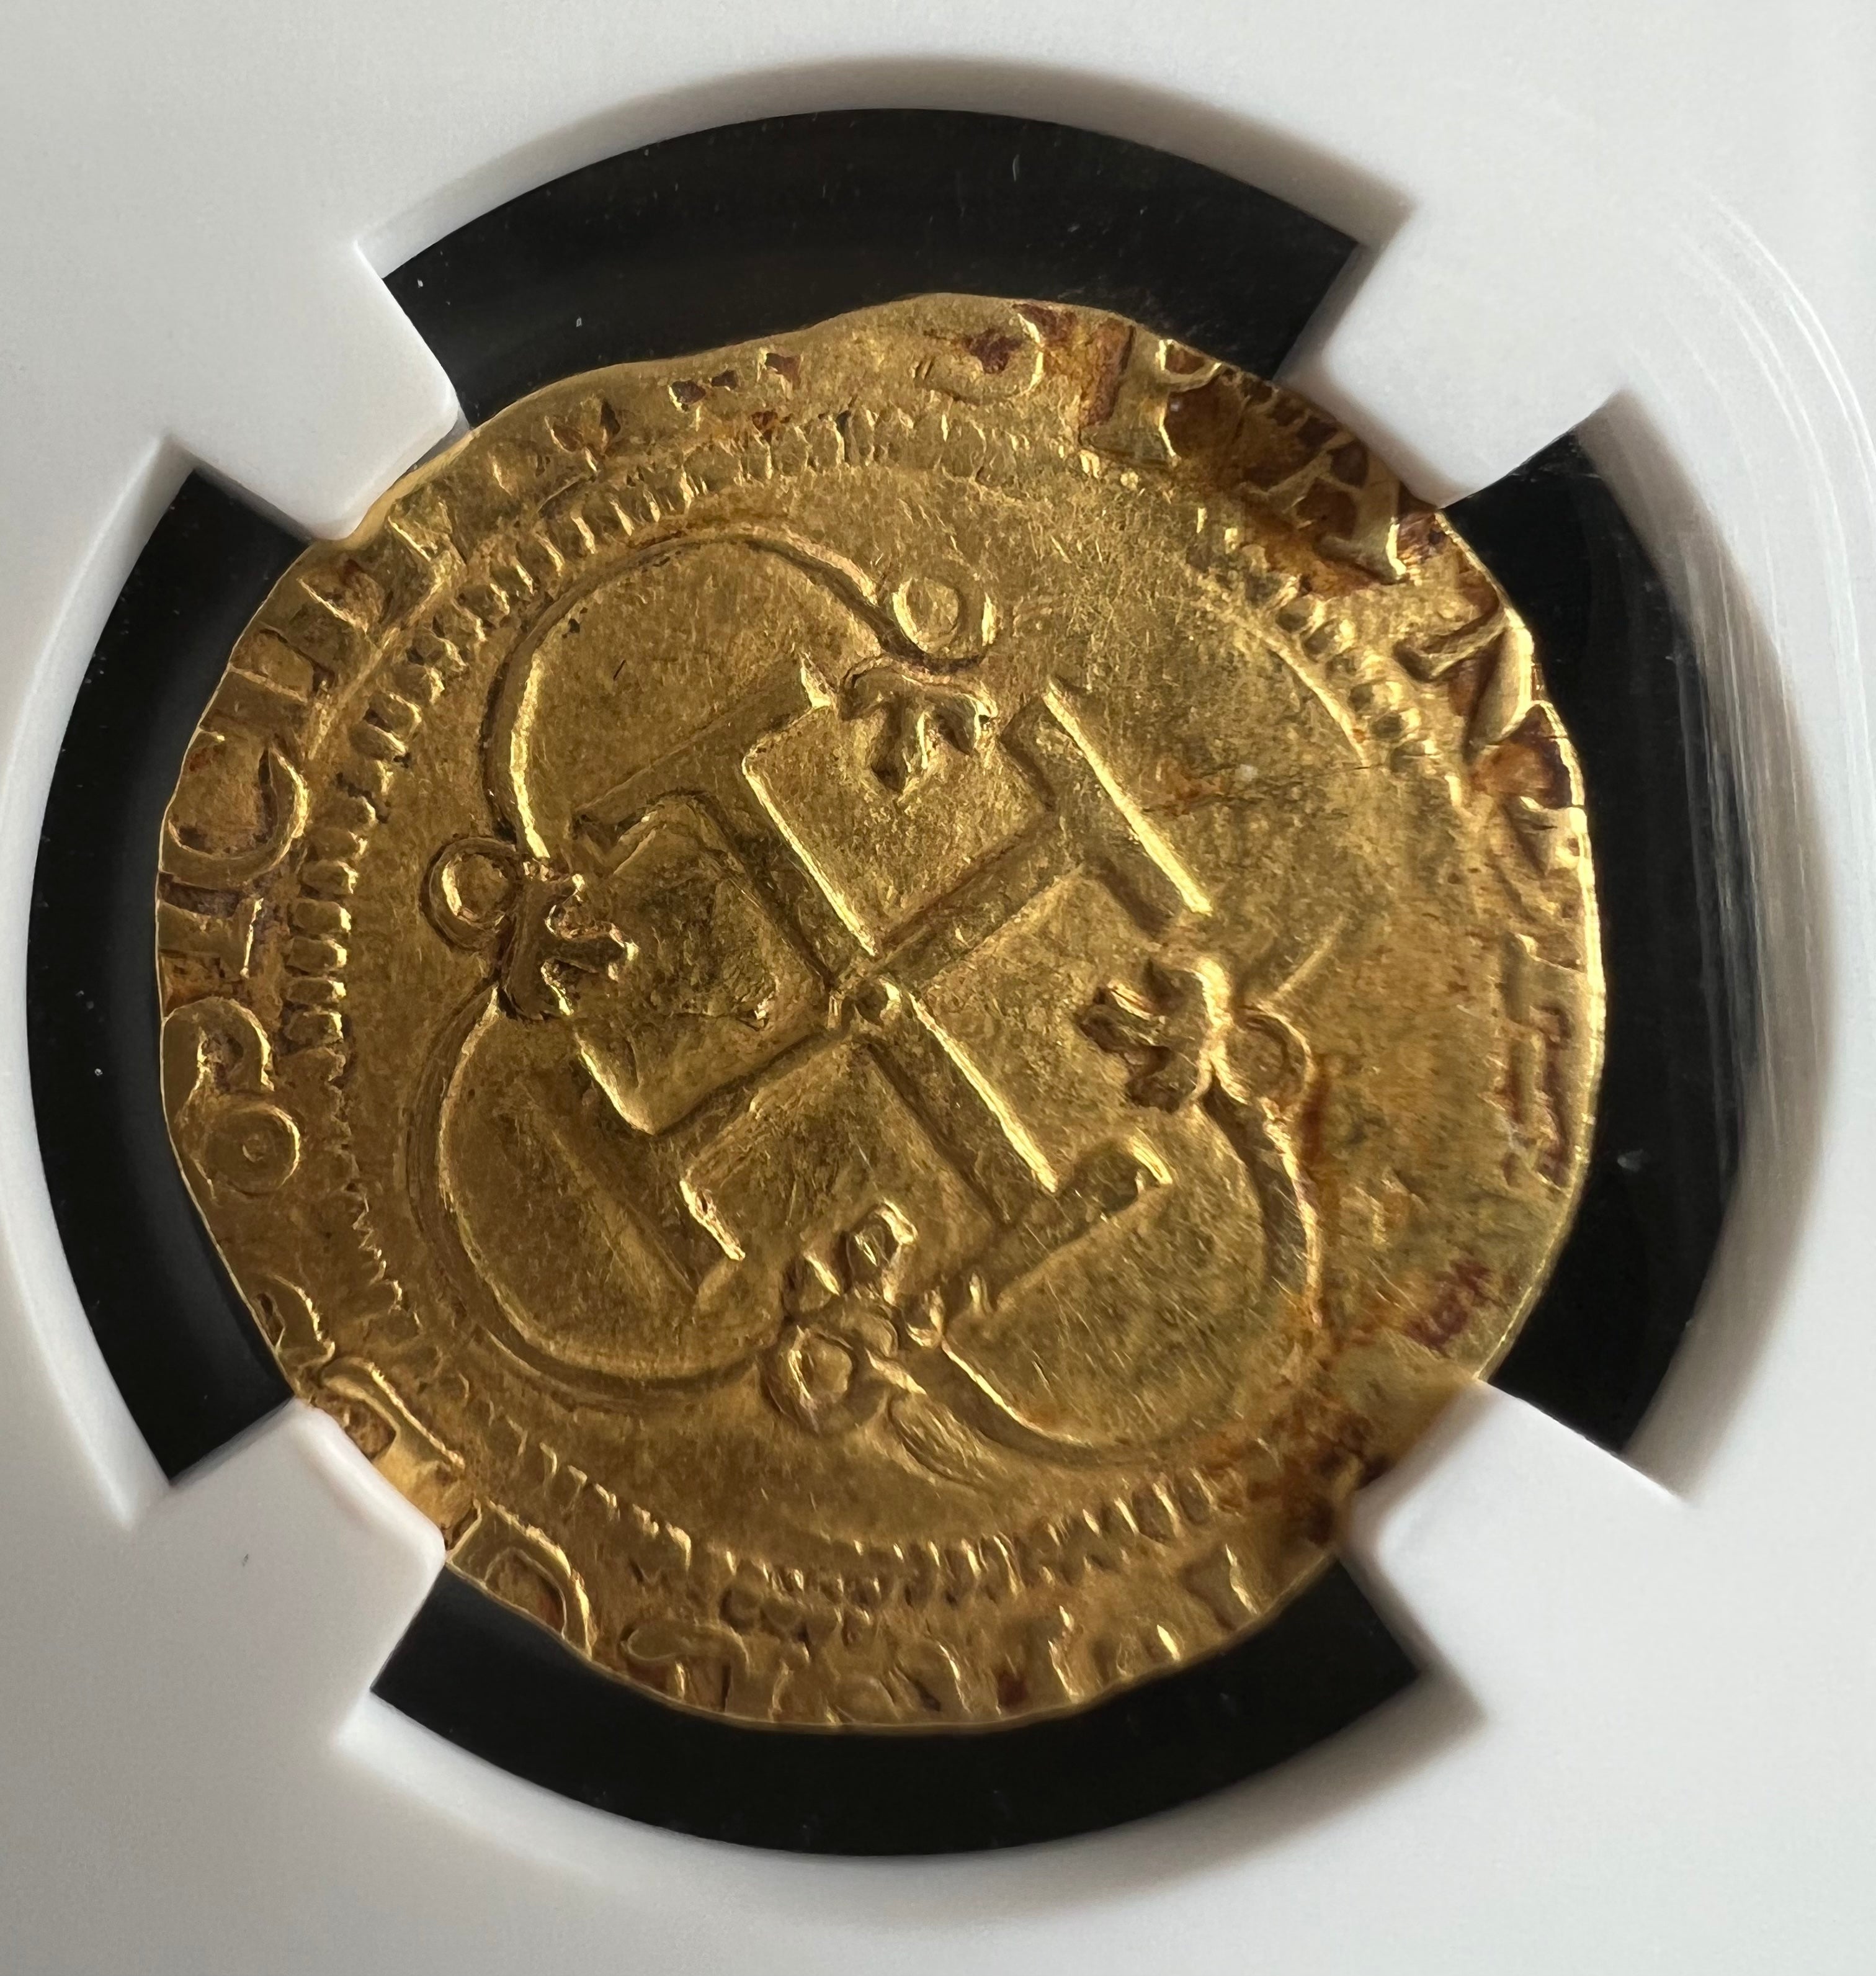 1 Escudo Spain Seville NGC Grade AU 55 (1516-56) Gold Coin